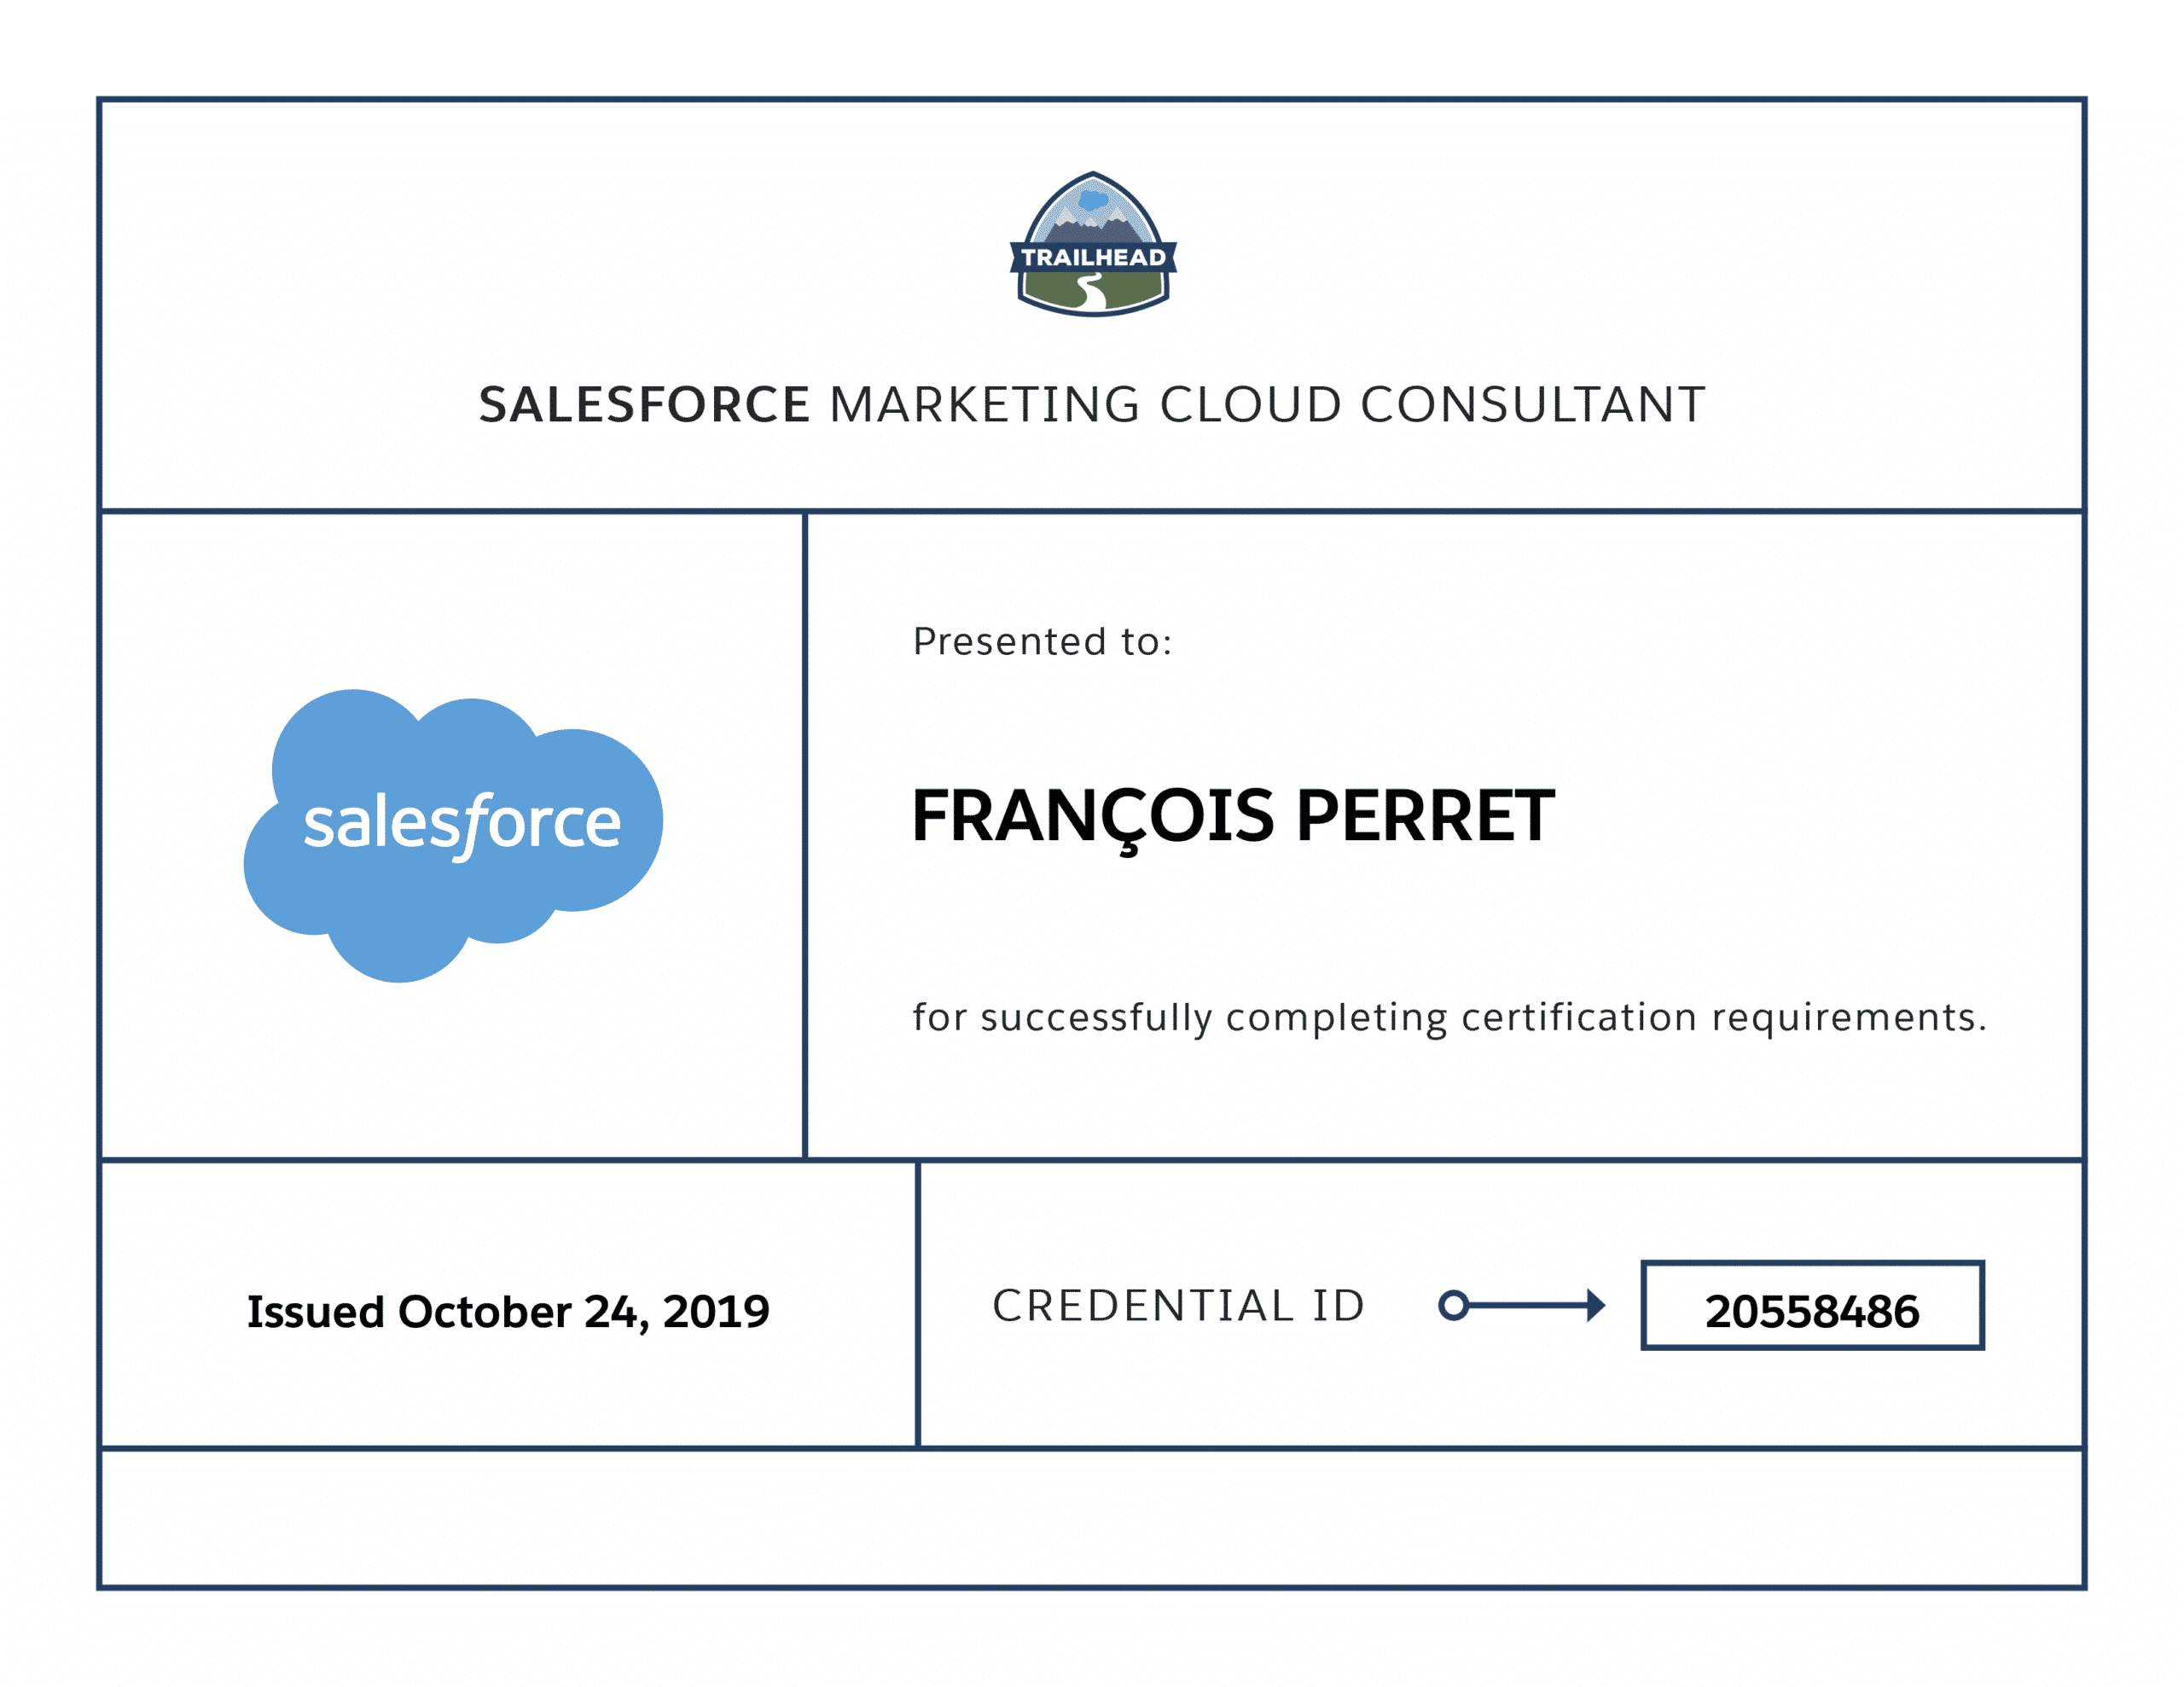 François Perret - Consultant certifié Salesforce Marketing Cloud